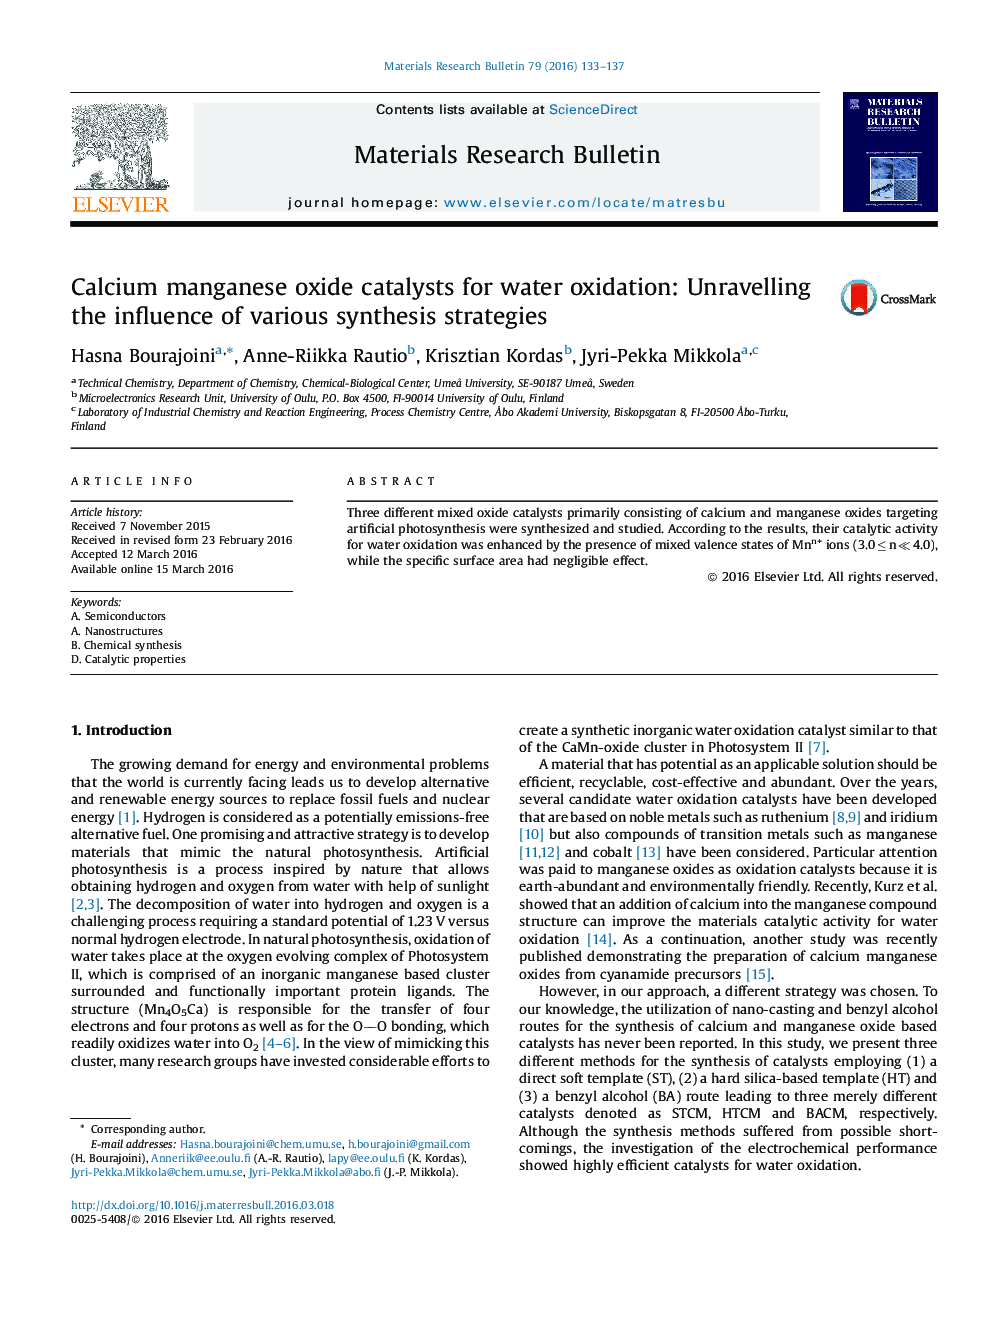 کاتالیزور اکسید منگنز کلسیم برای اکسیداسیون آب: تجزیه و تحلیل اثر استراتژی های مختلف سنتز 